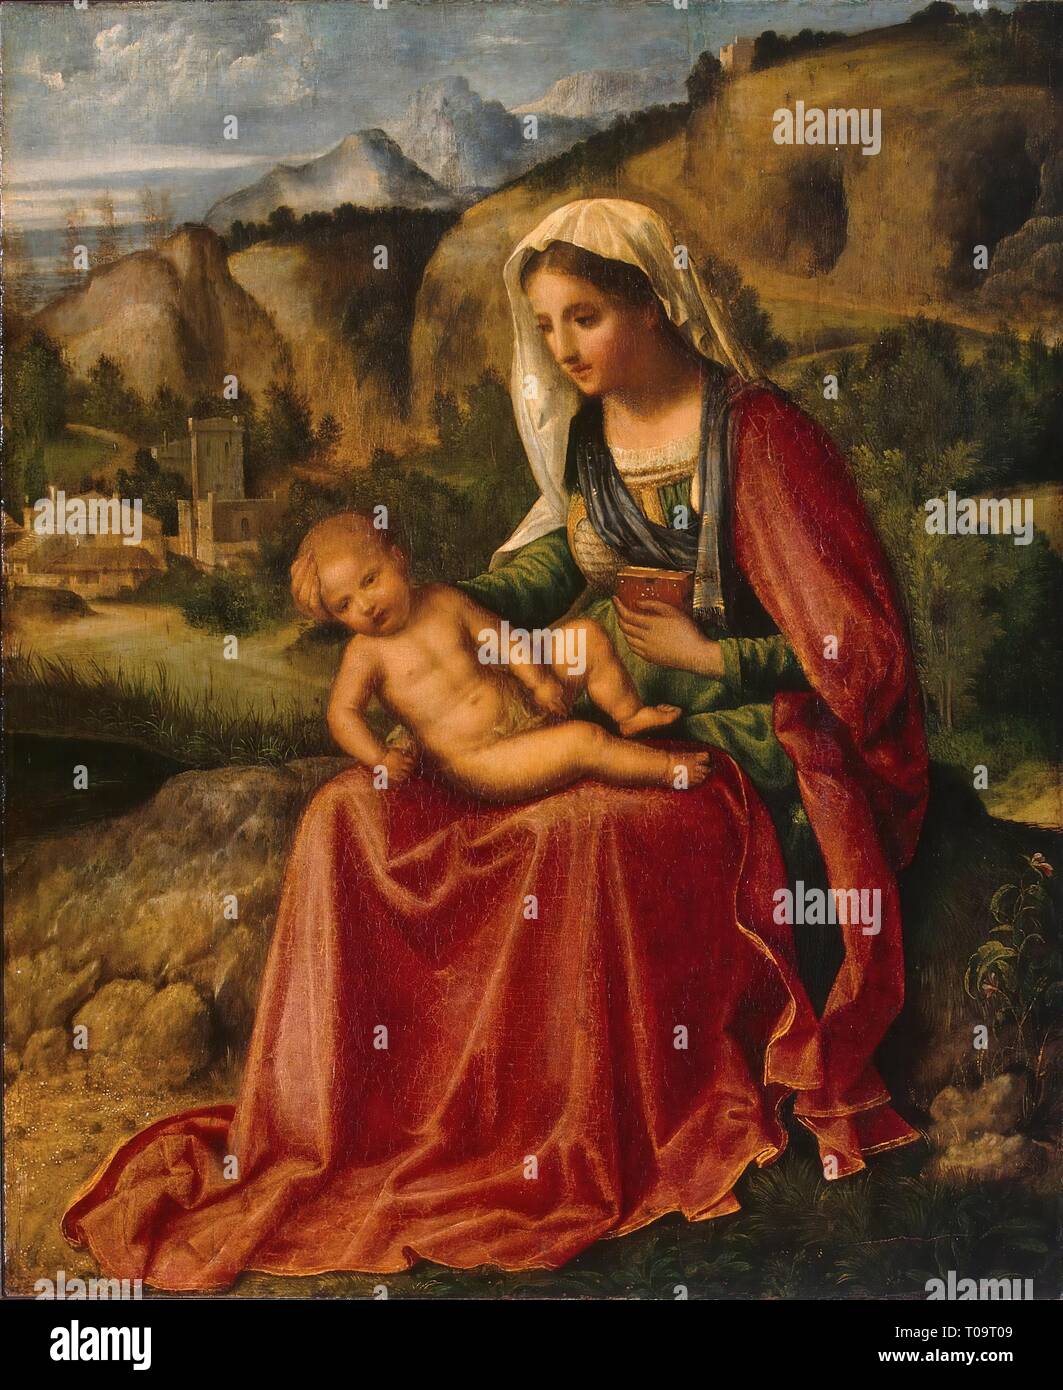 'The Virgin and the Child in a Landscape'. Italy, Circa 1503. Dimensions: 44x36,5 cm. Museum: State Hermitage, St. Petersburg. Author: Giorgione (Giorgio Barbarelli da Castelfranco). GIORGIONE. Stock Photo